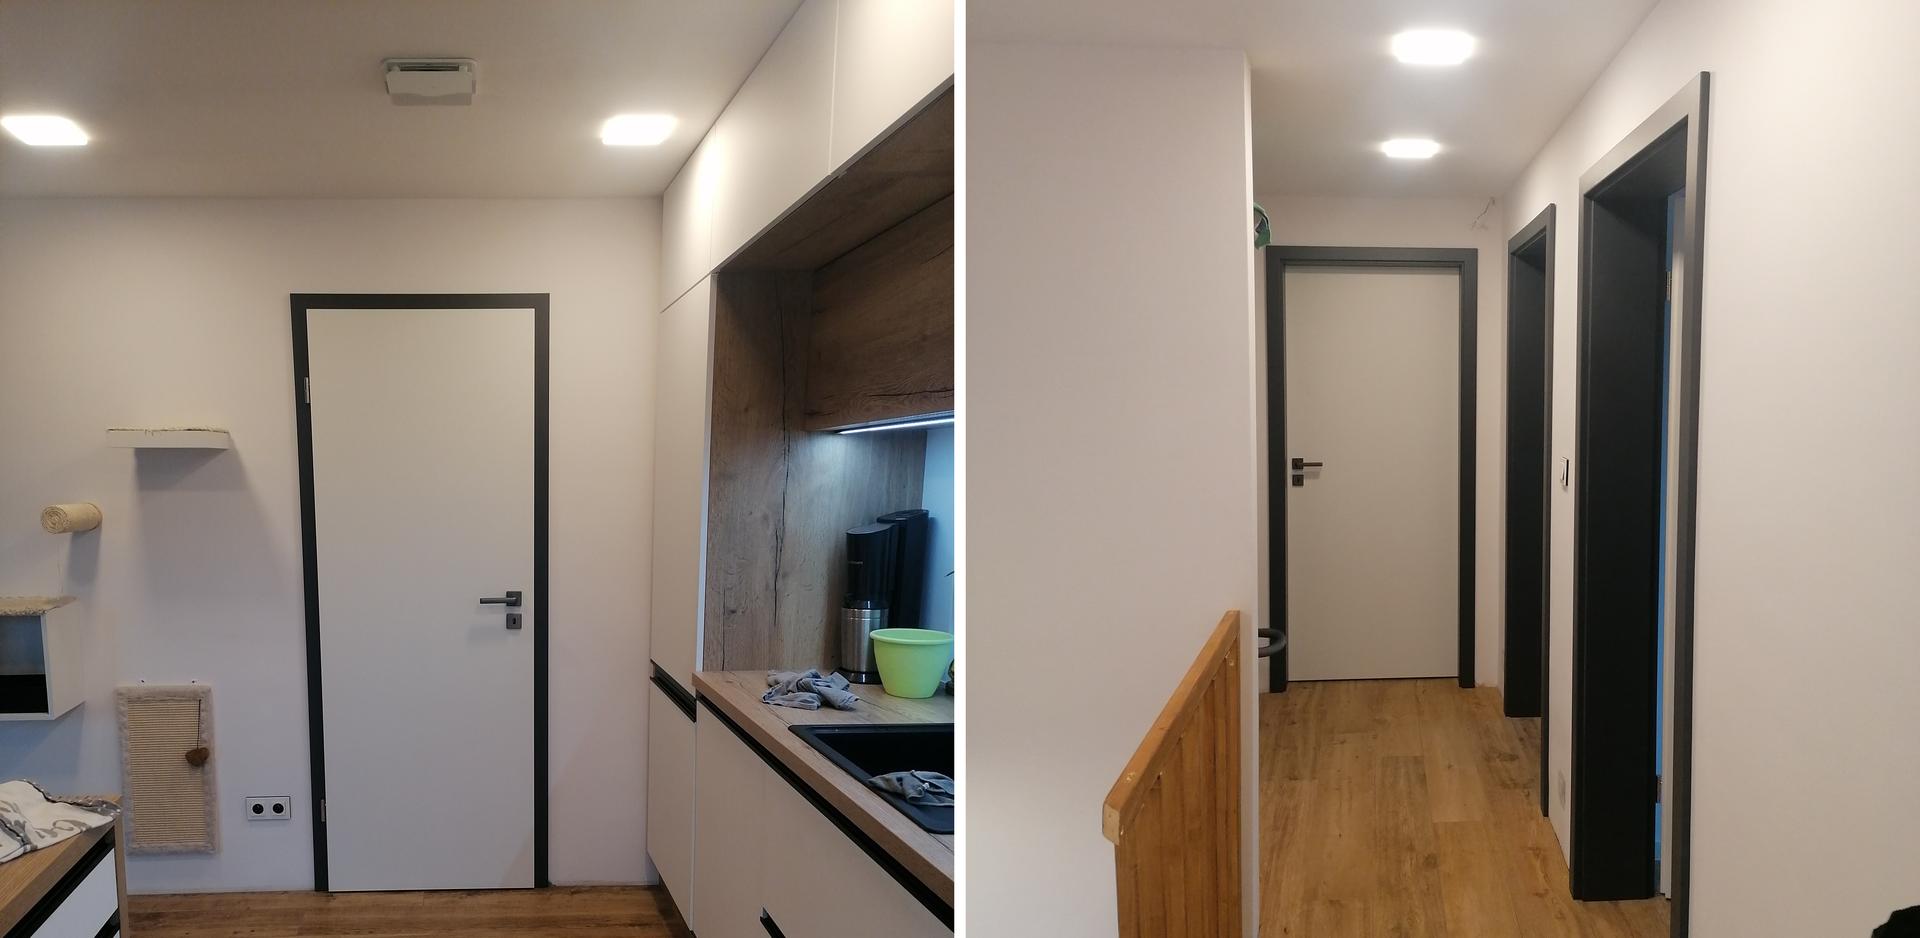 Pasiv Svépomocí 2021 - interiérové dveře hladké bílé CPL a antracitové obložky Prüm